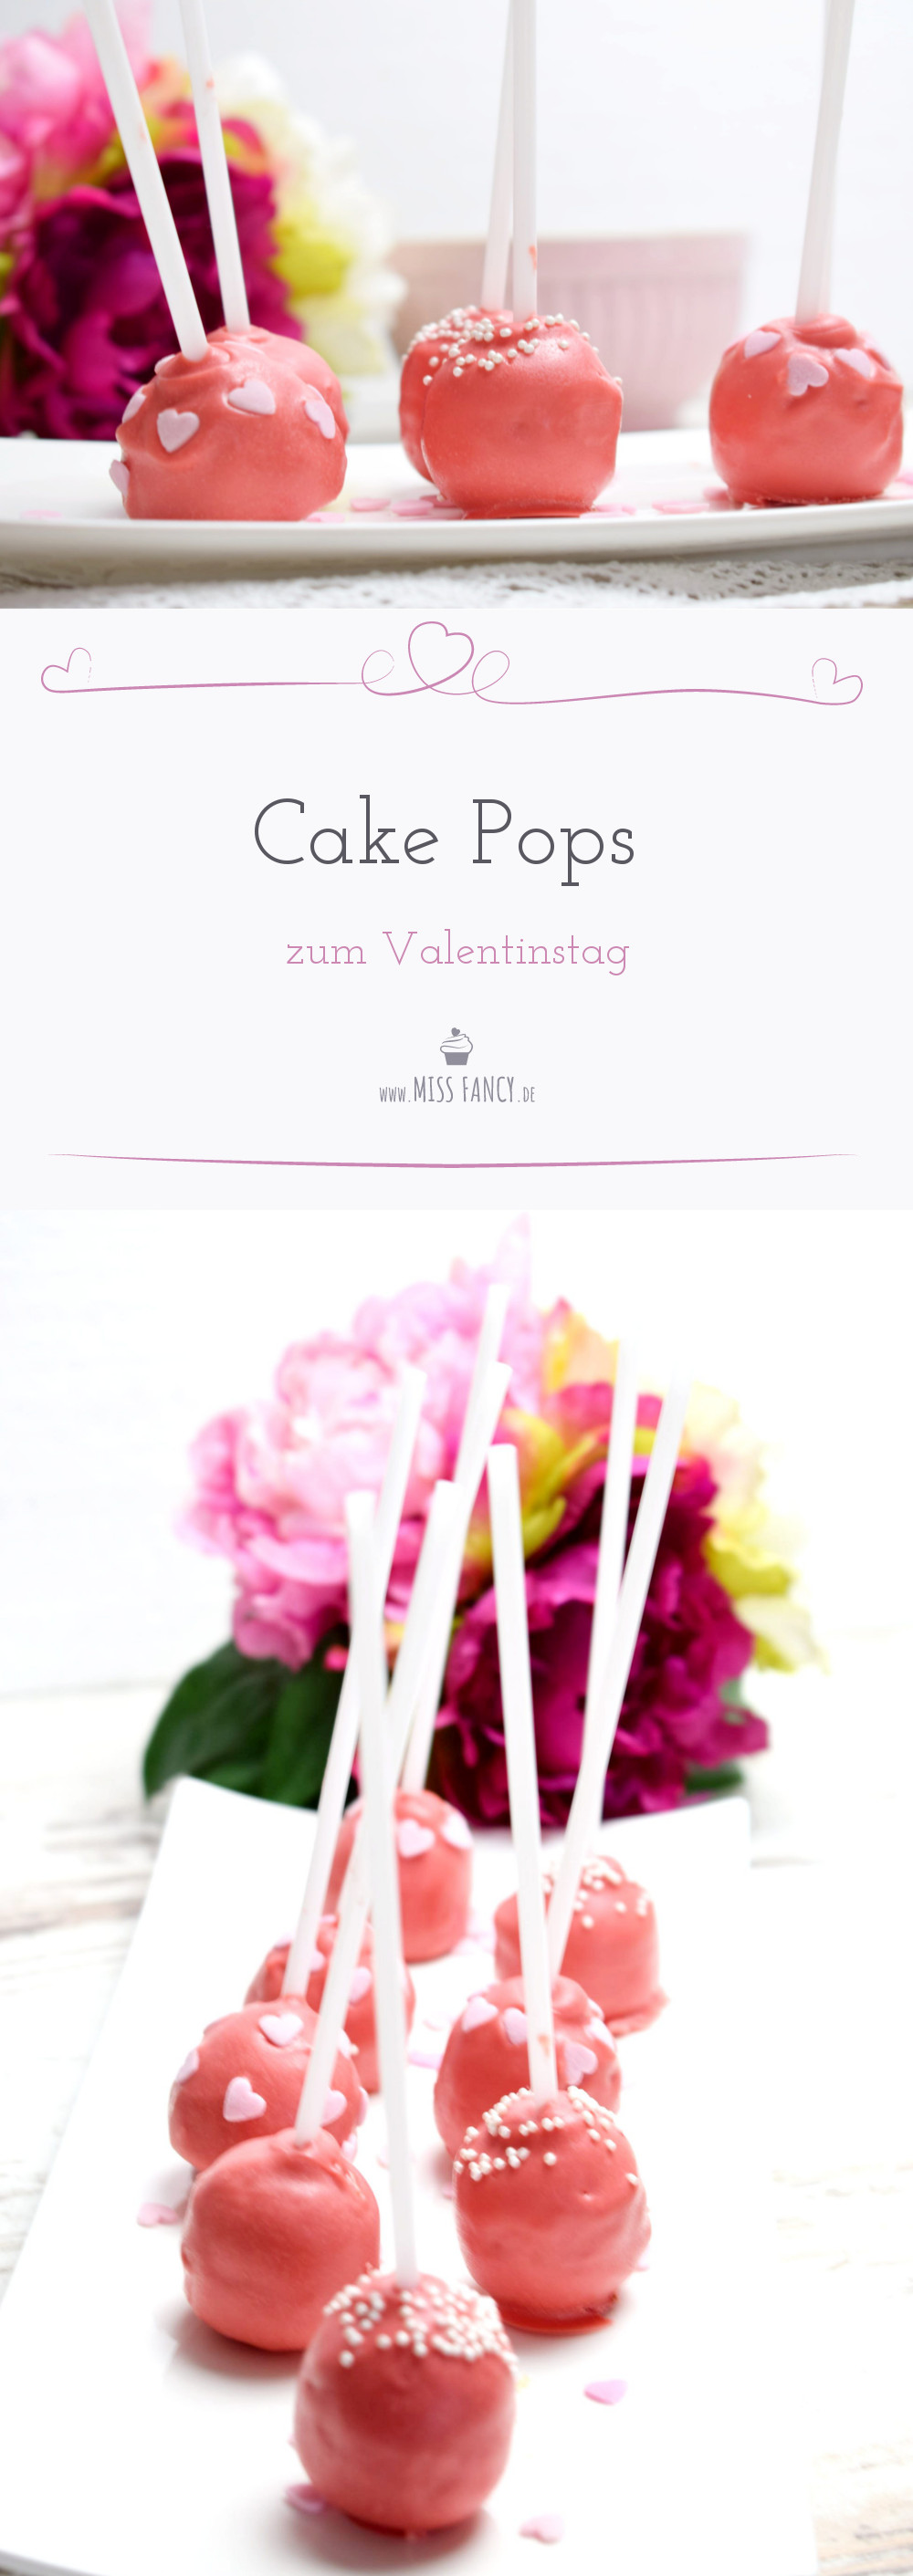 Cake Pops für Valentinstag